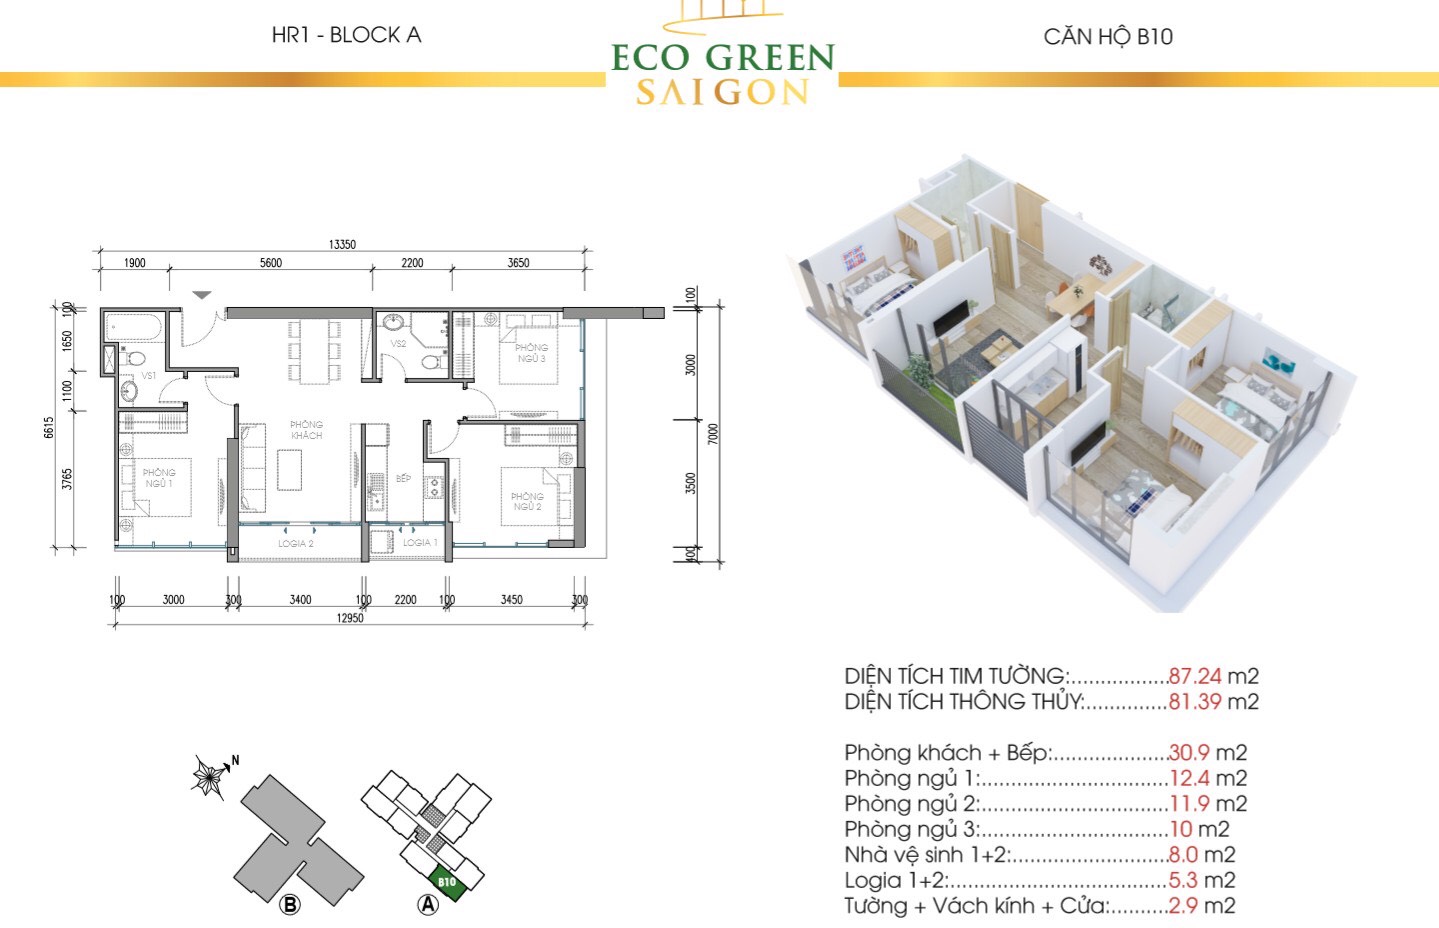 Mẫu thiết kế căn B10 Tòa Hr1 căn hộ Eco Green Saigon